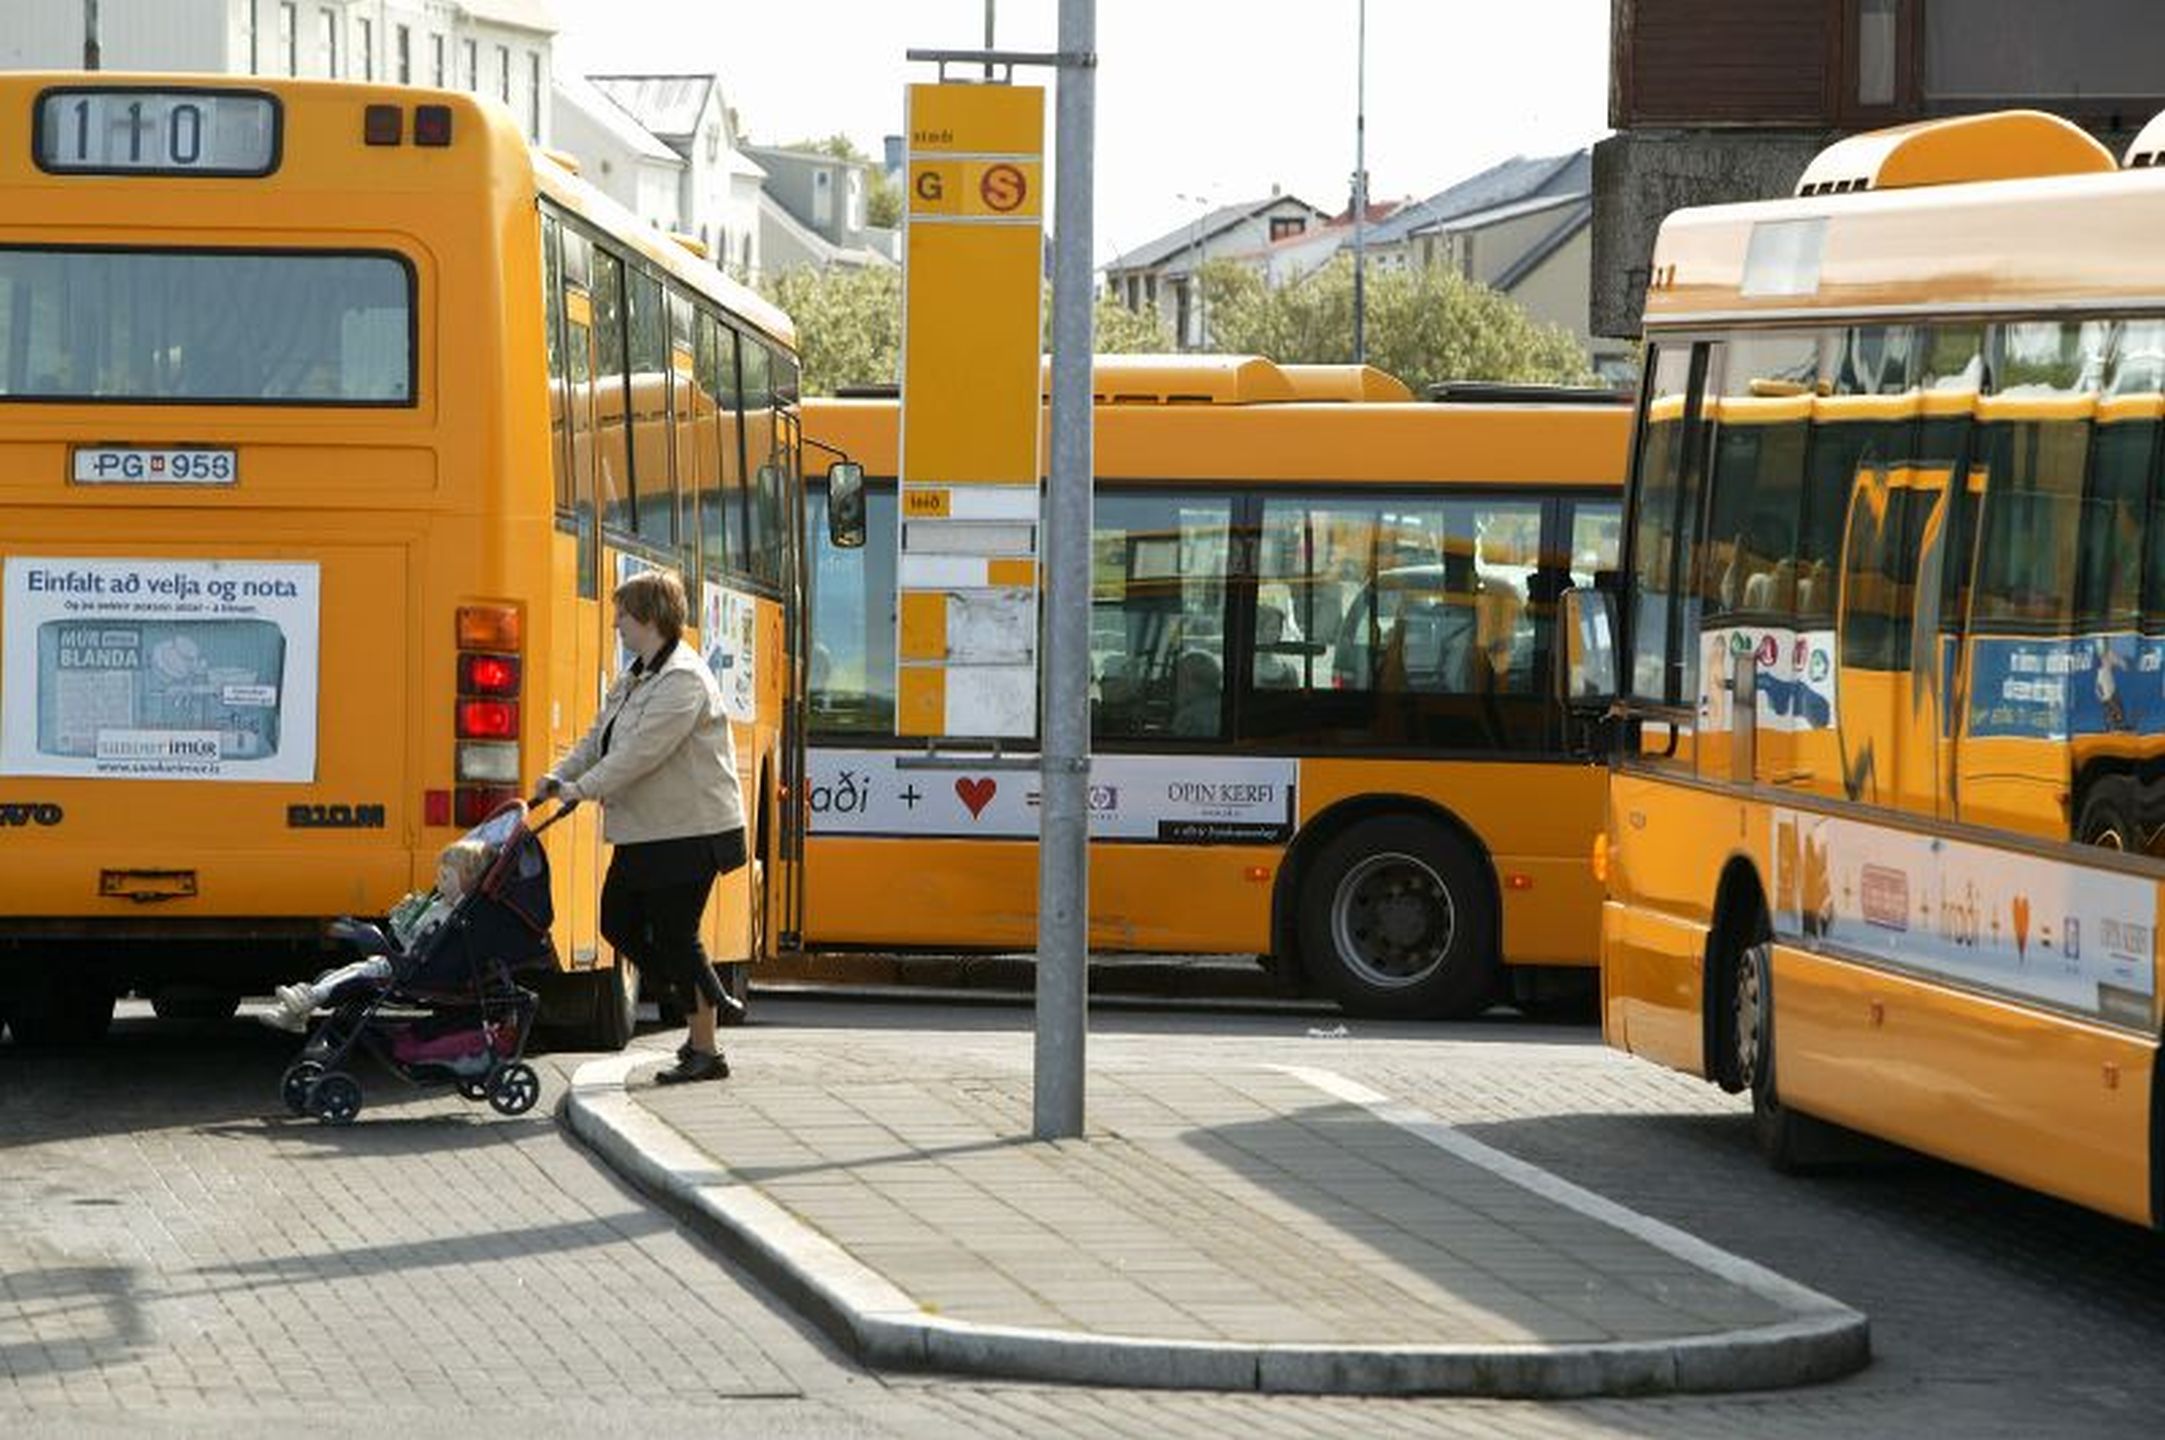 Public buses